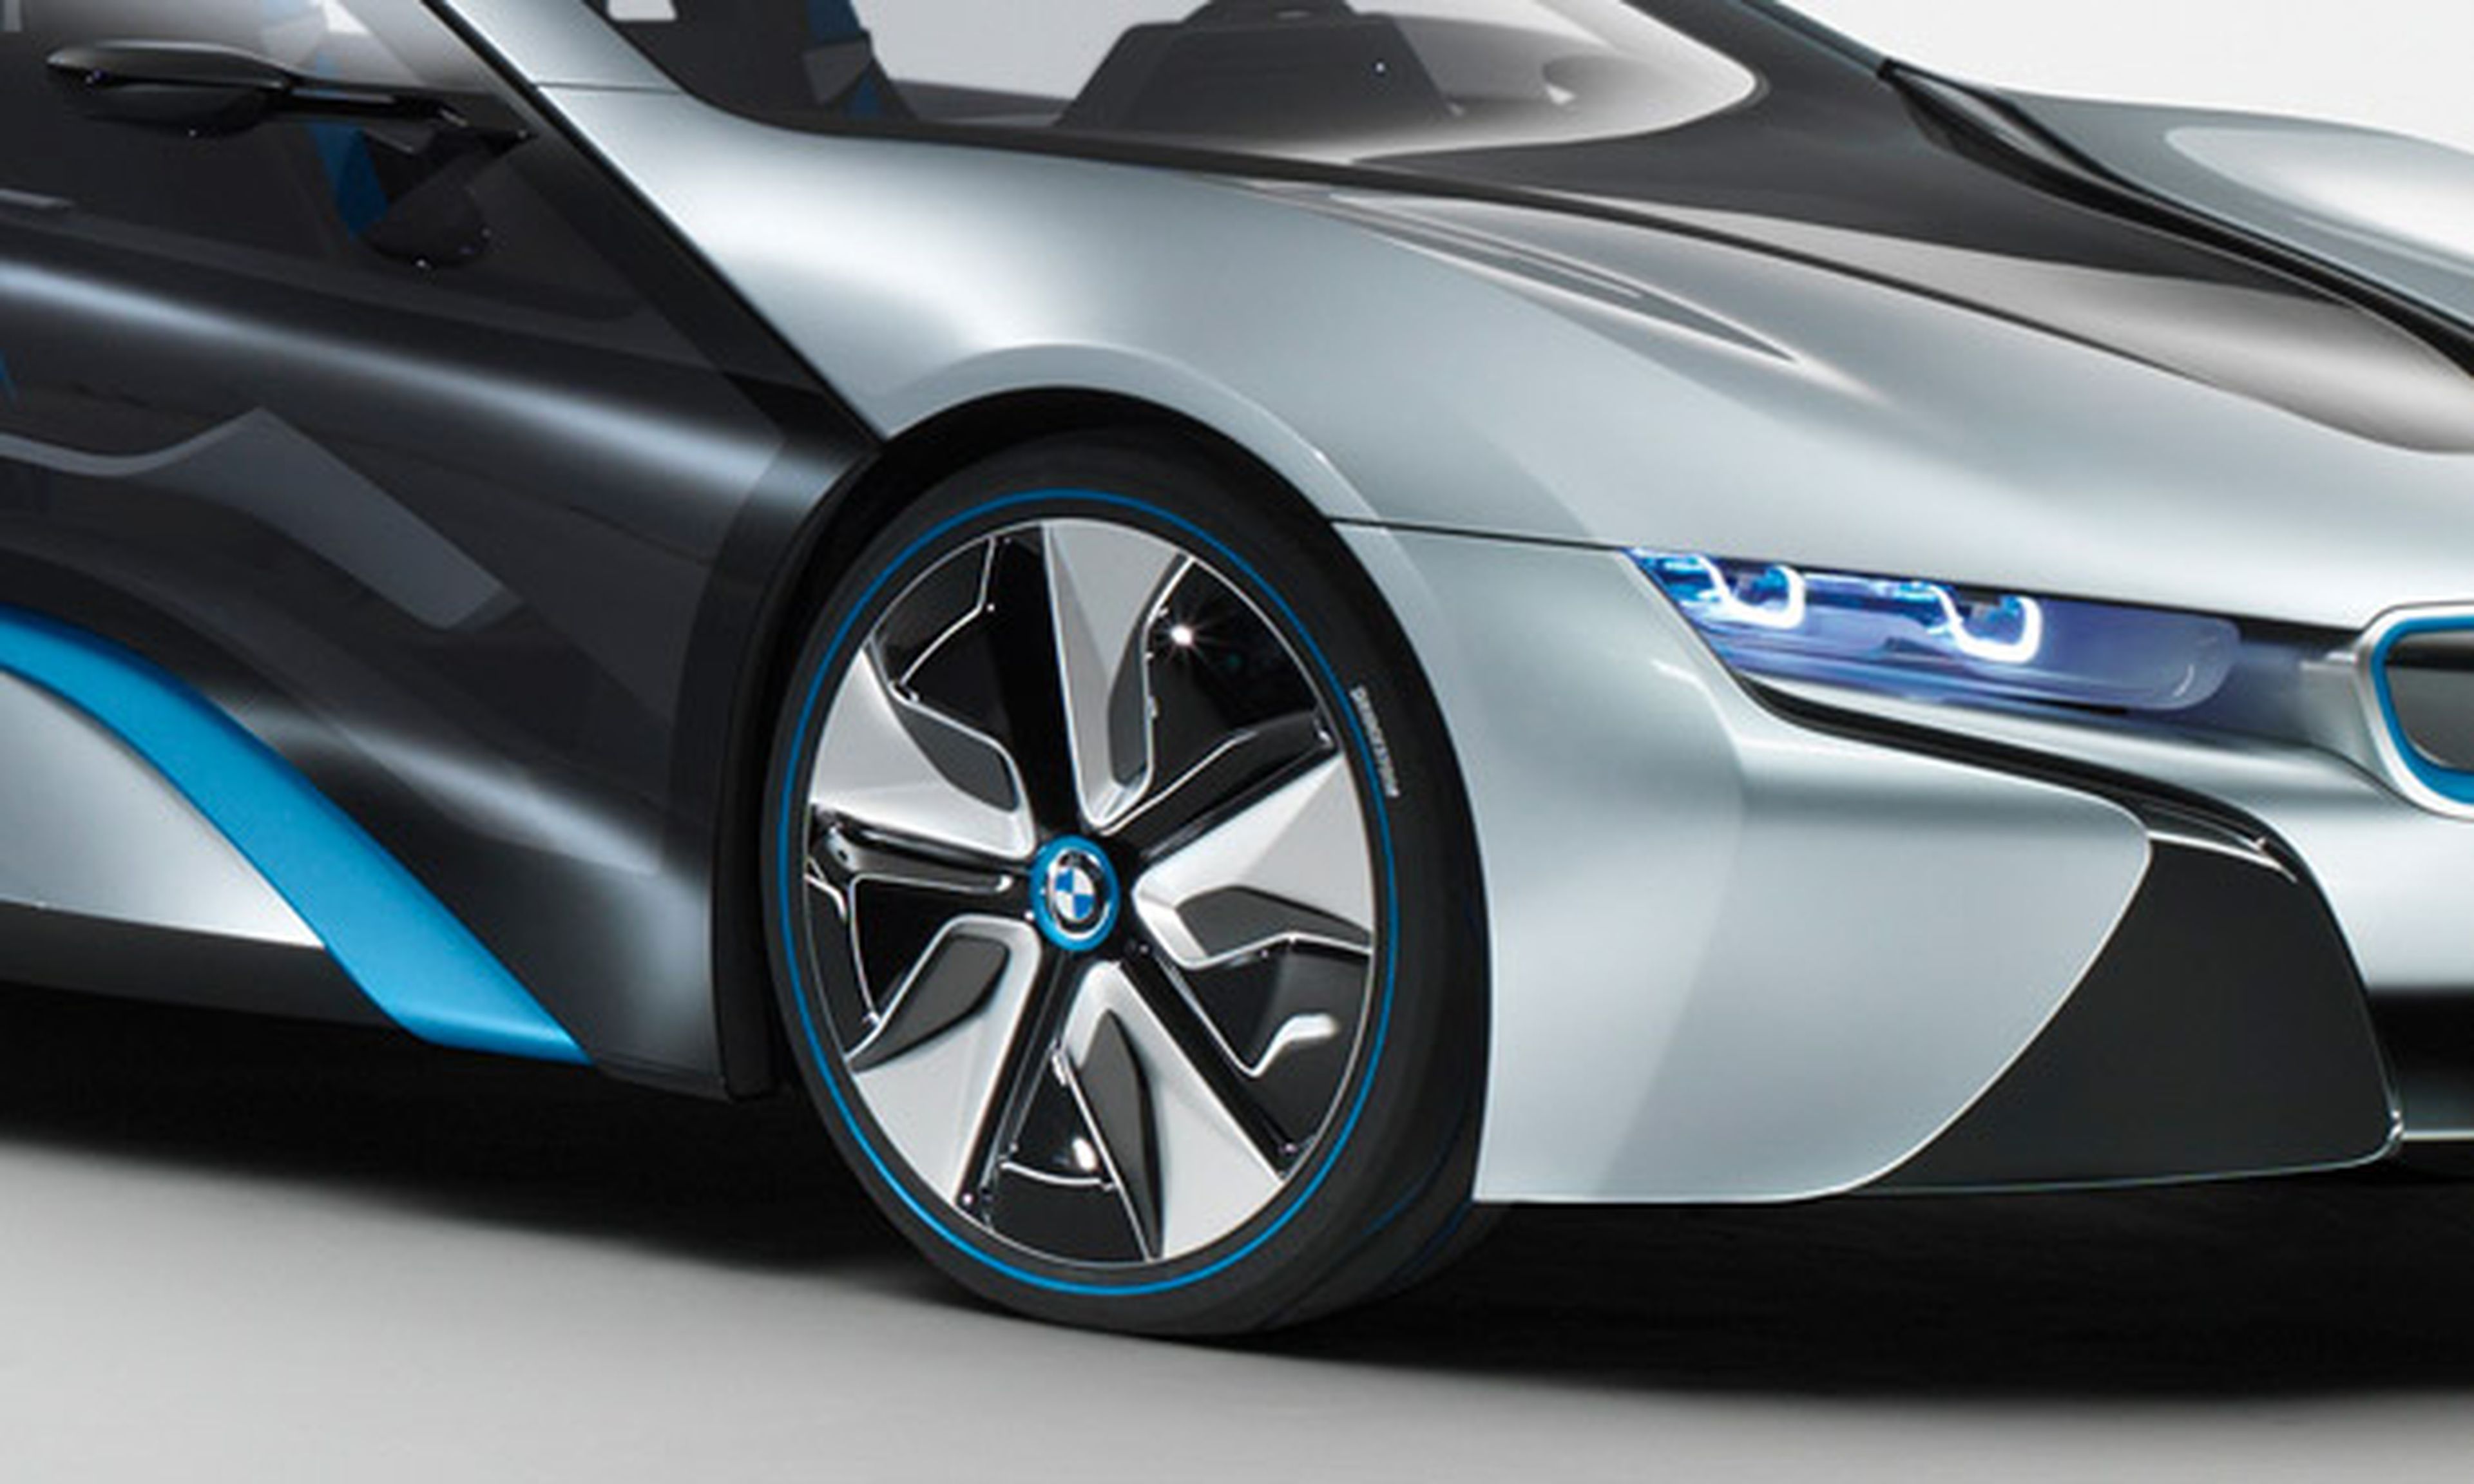 El deportivo BMW-Toyota podría debutar en el Salón de Tokio